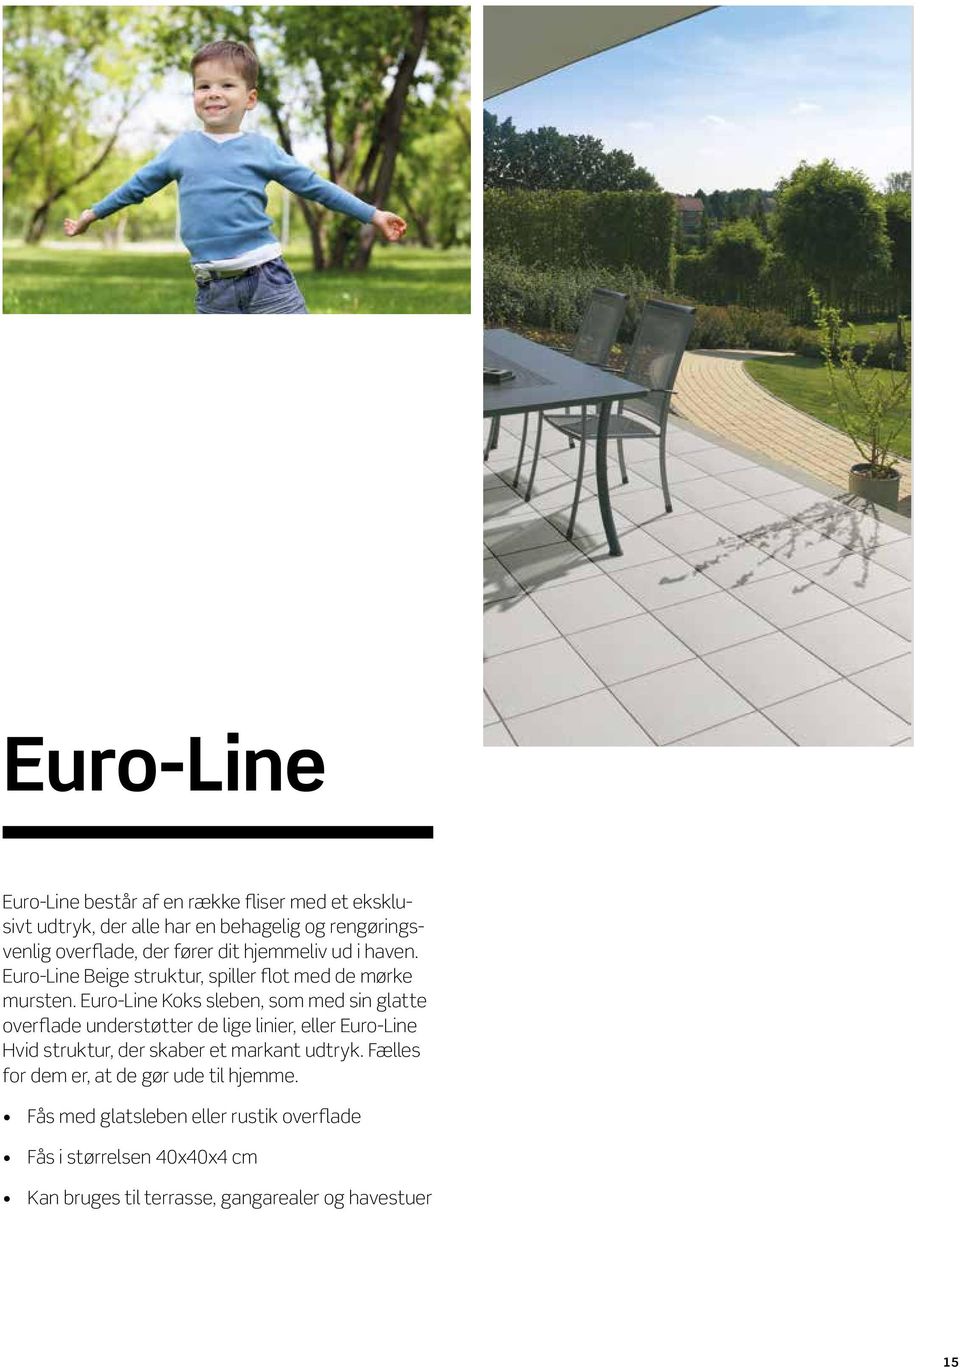 Euro-Line Koks sleben, som med sin glatte overflade understøtter de lige linier, eller Euro-Line Hvid struktur, der skaber et markant